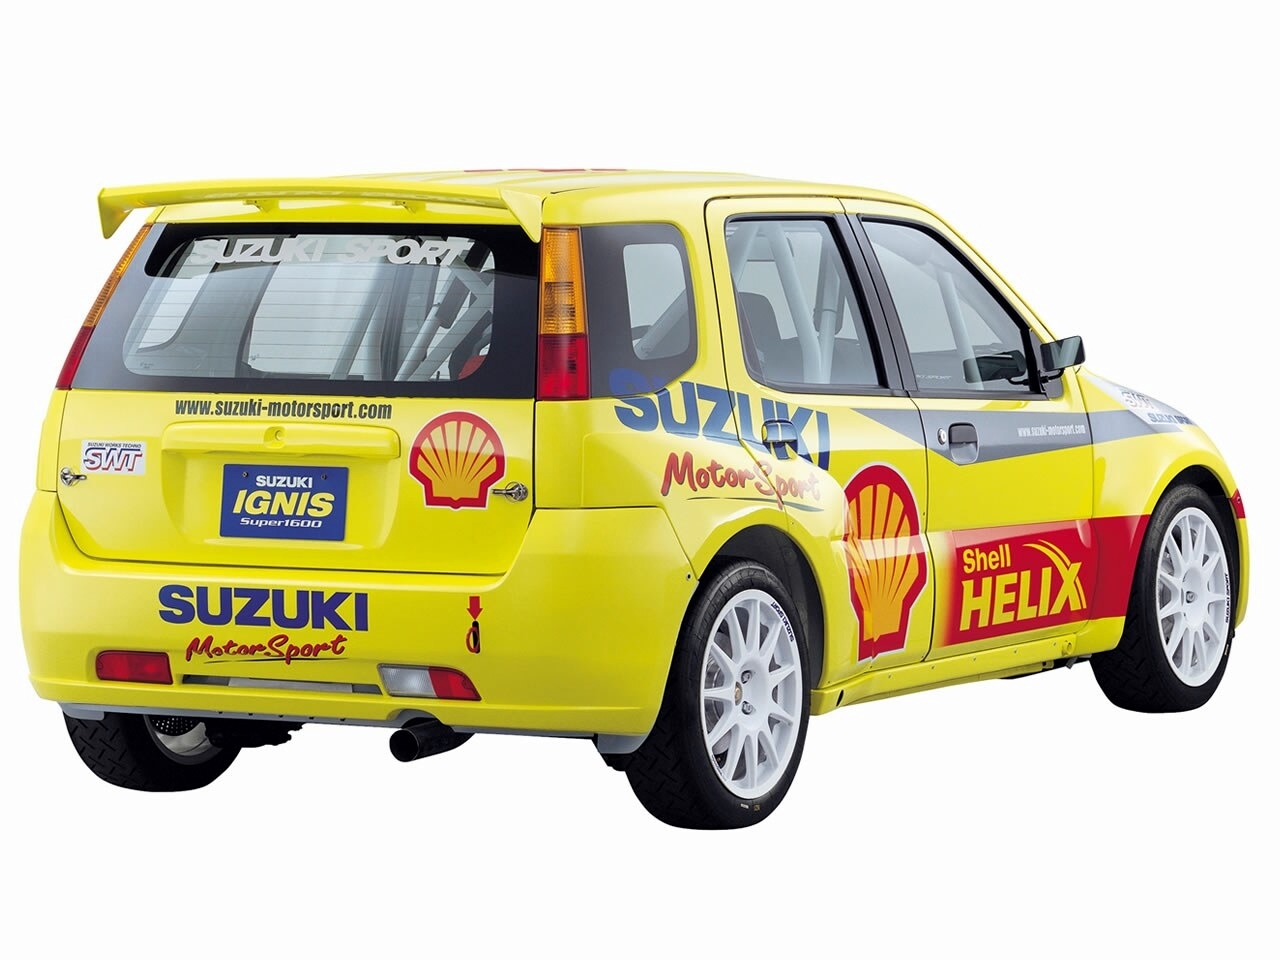 Free download wallpaper Suzuki, Vehicles, Super1600 Racing on your PC desktop